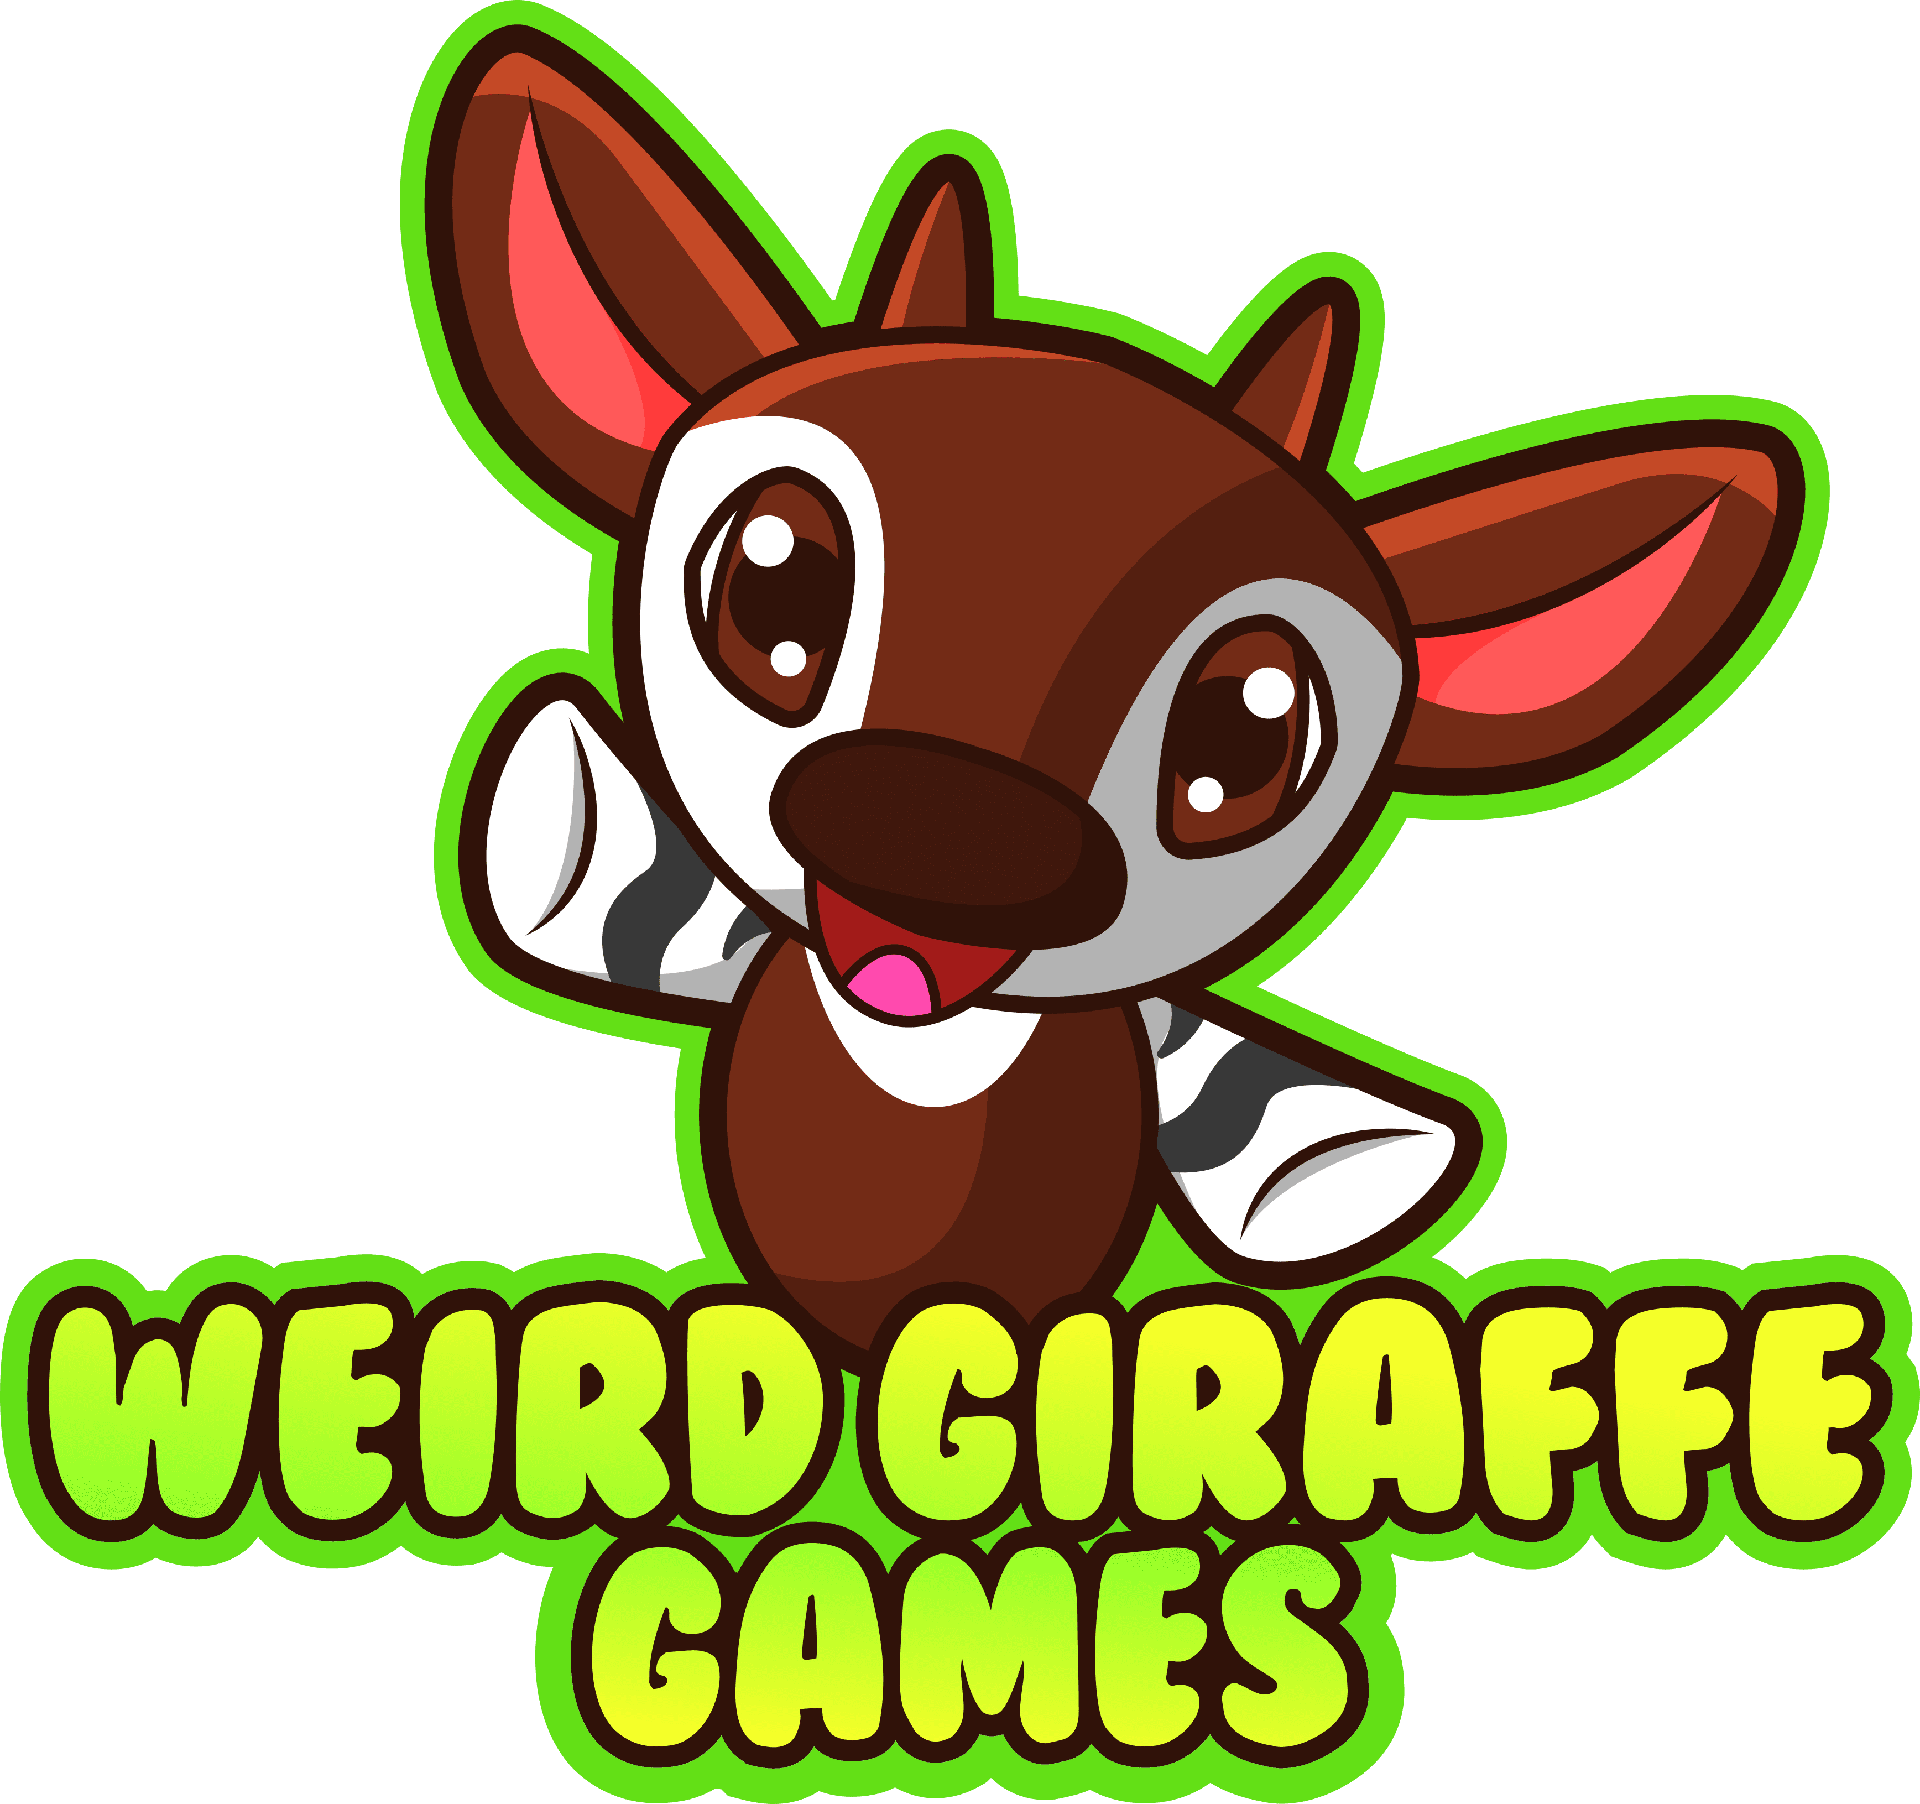 Brand: Weird Giraffe Games